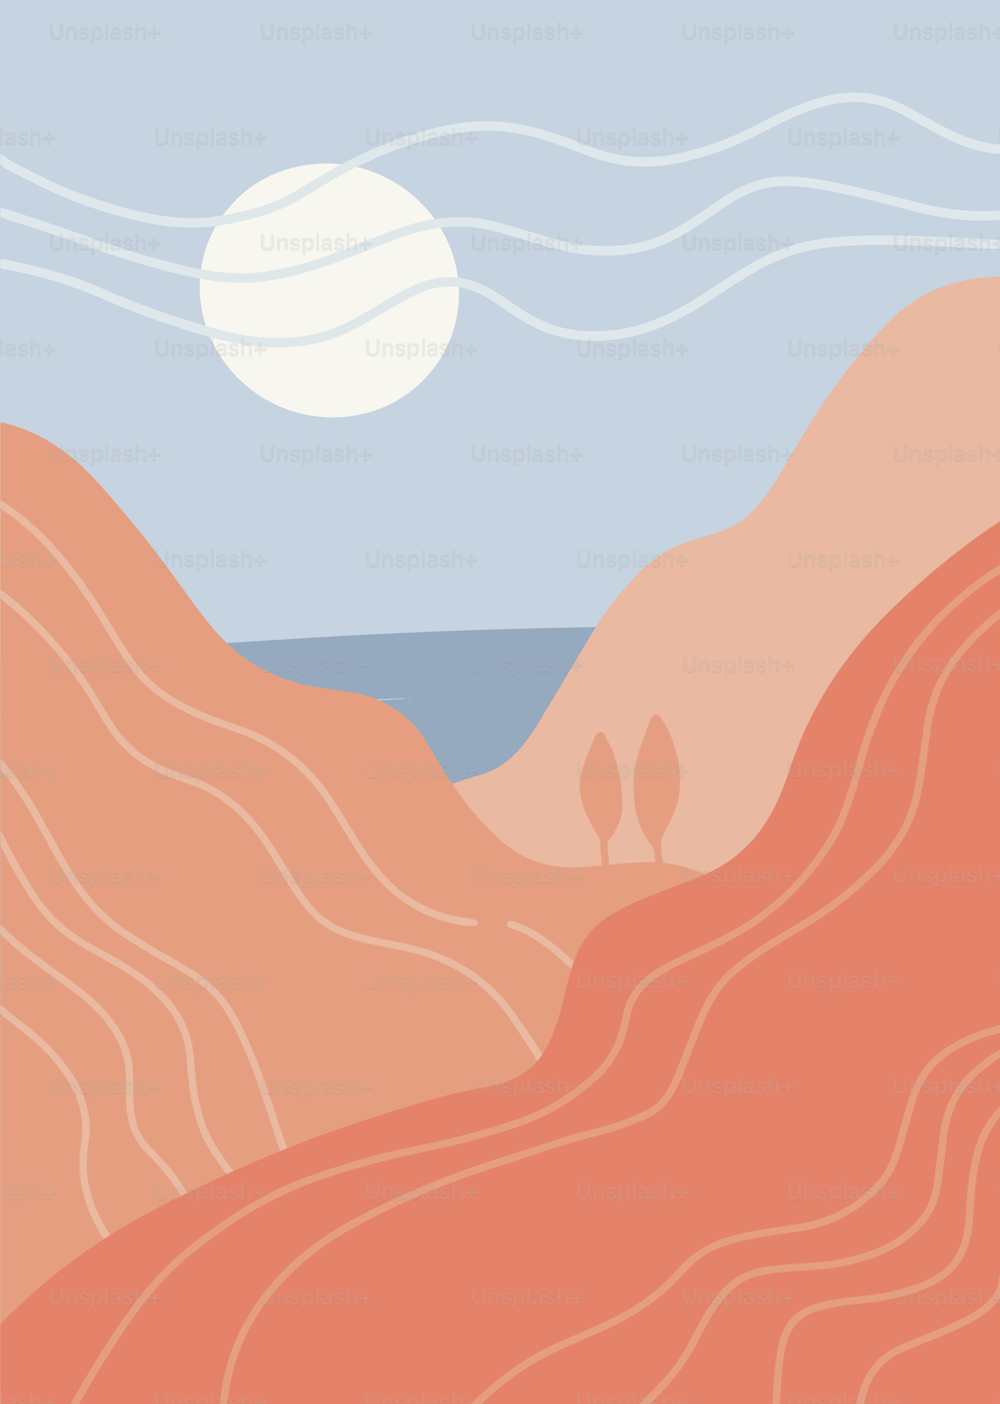 Paisaje de arte abstracto minimalista. Panorama de las montañas, el mar y el sol blanco y caliente. Gráficos planos vectoriales dibujados a mano